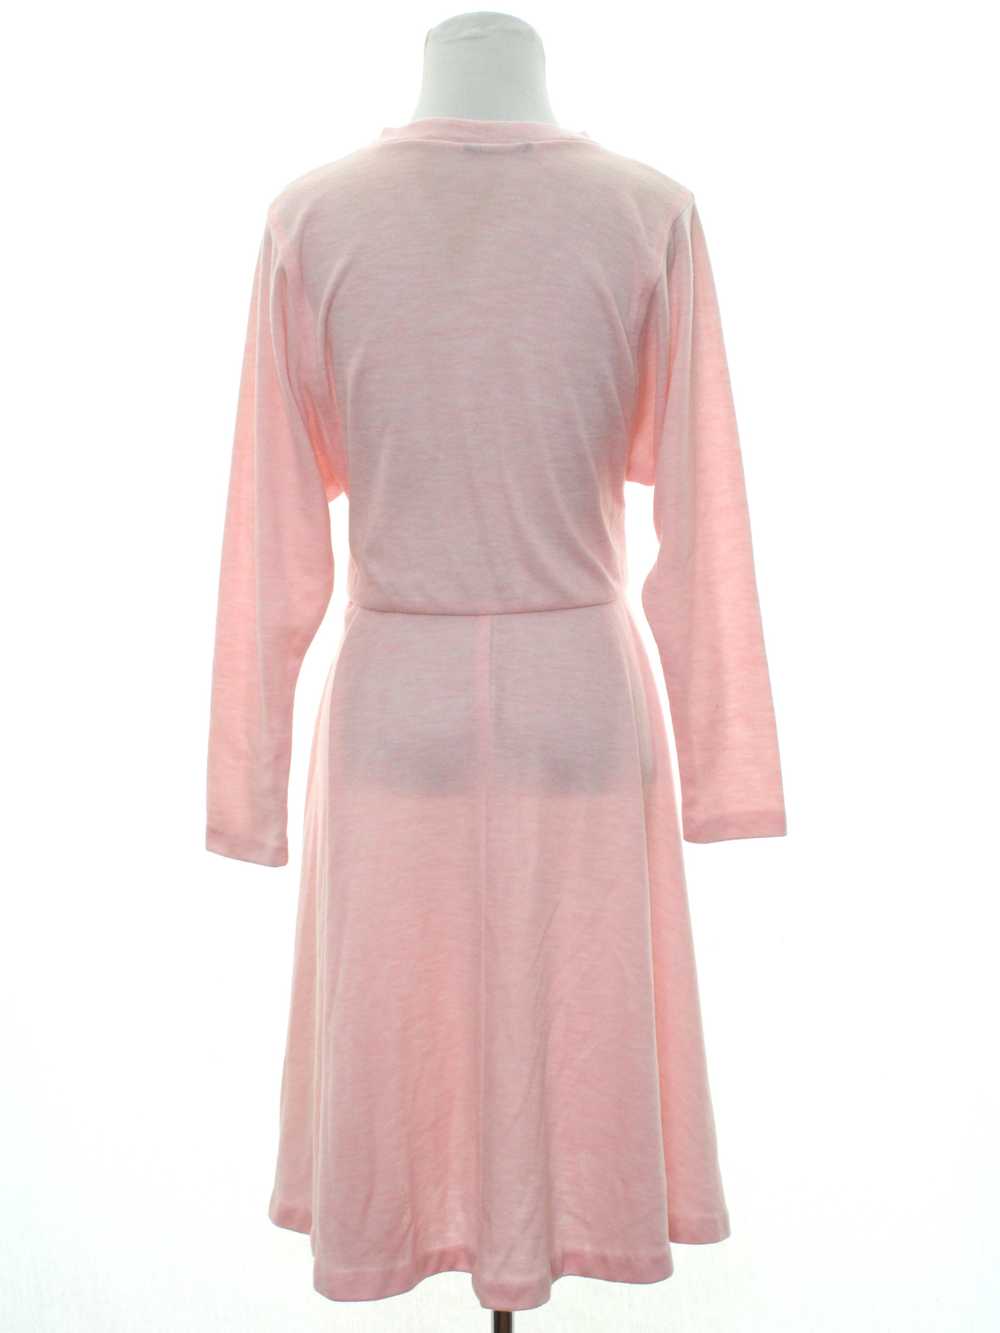 1960's Mod Knit Dress - image 3